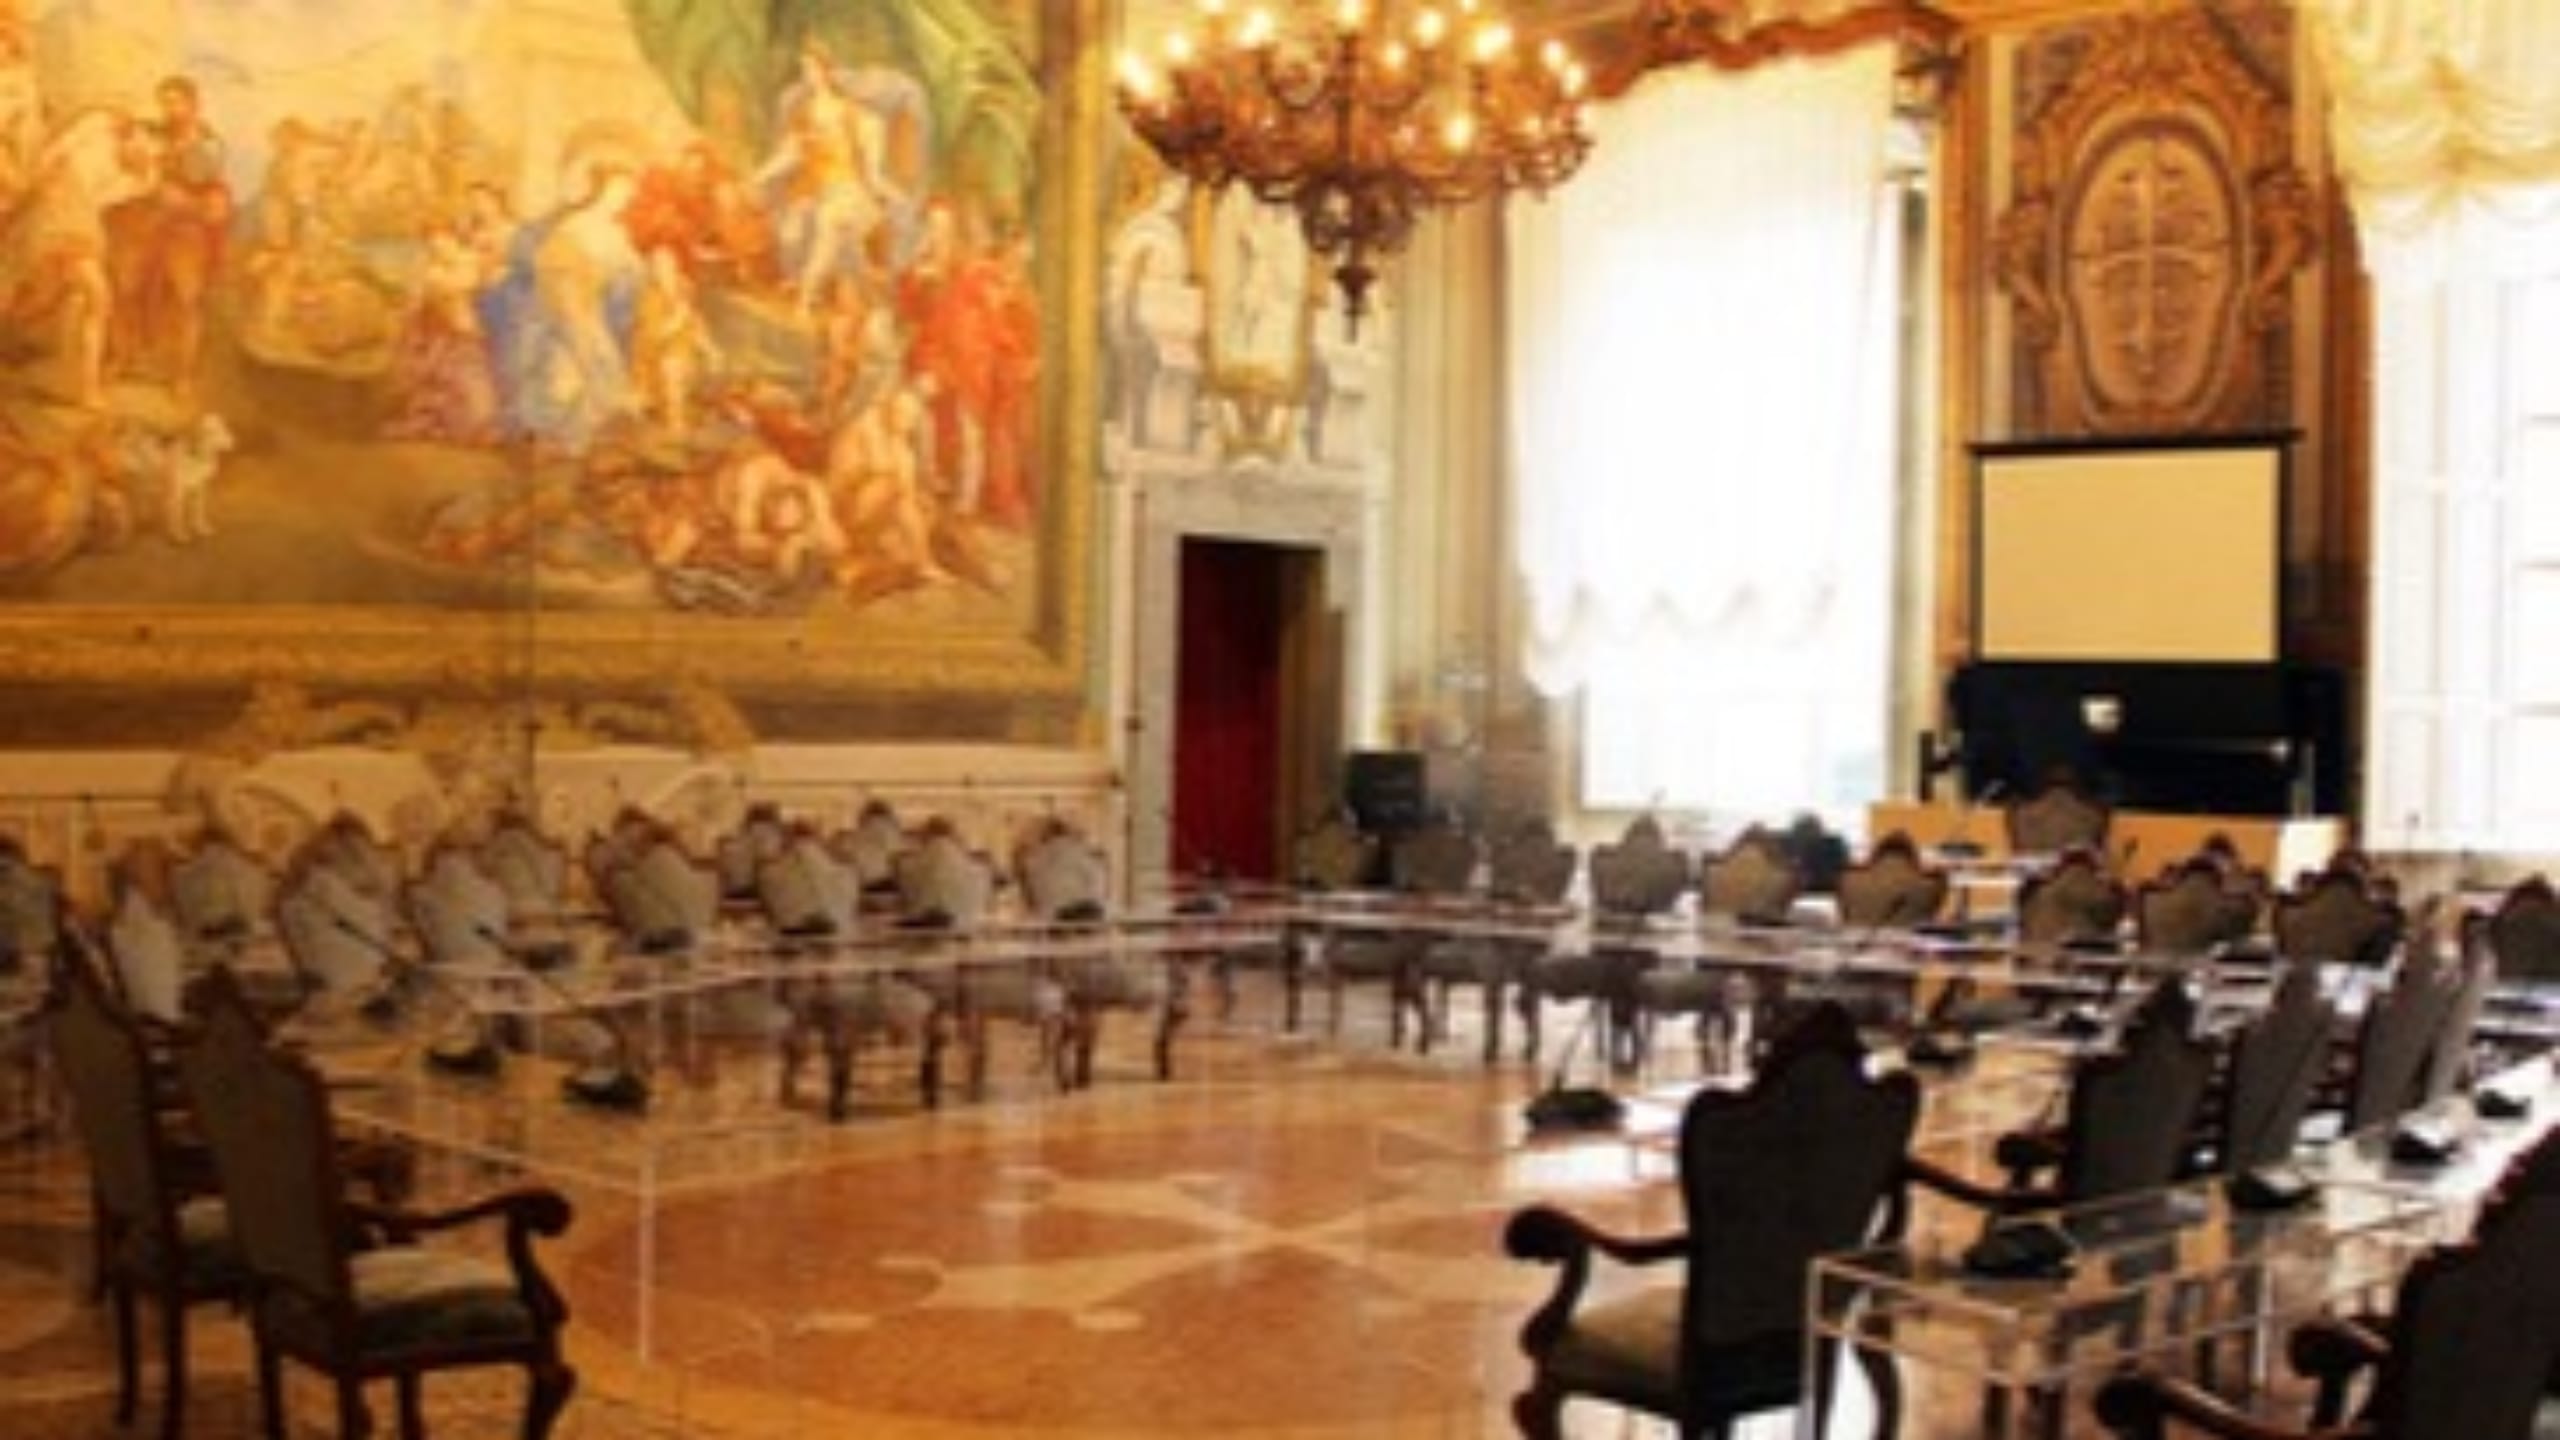 Comunali, Azione e Italia Vita sull’annuncio Terzo Polo: “Corriamo da soli a Pisa”